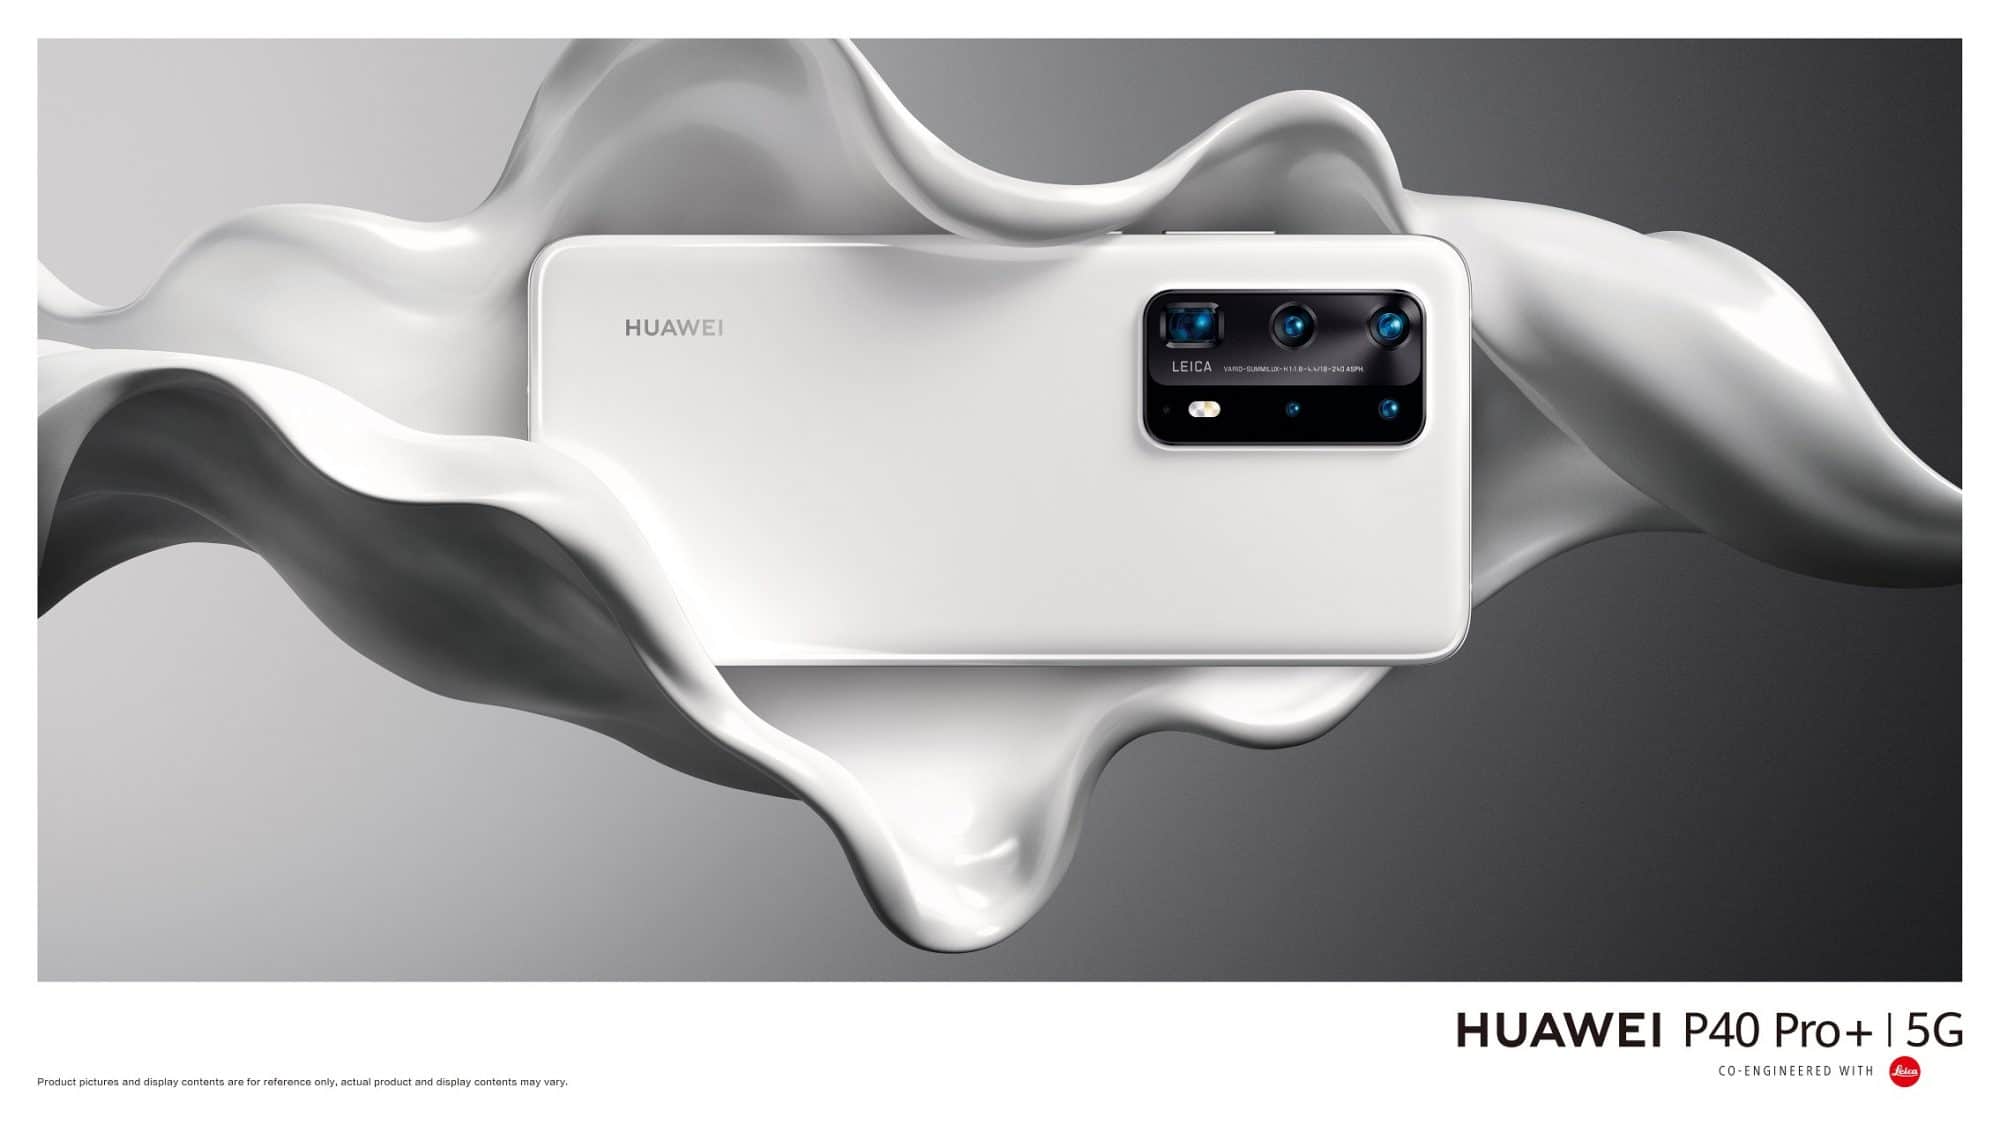 เปิดตัว 2 ผลิตภัณฑ์ใหม่ HUAWEI P40 Pro+ สมาร์ทโฟนรุ่นสูงสุดในตระกูล P40 Series และ HUAWEI Mate Xs สมาร์ทโฟนจอพับสุดล้ำที่ทุกคนรอคอย 5